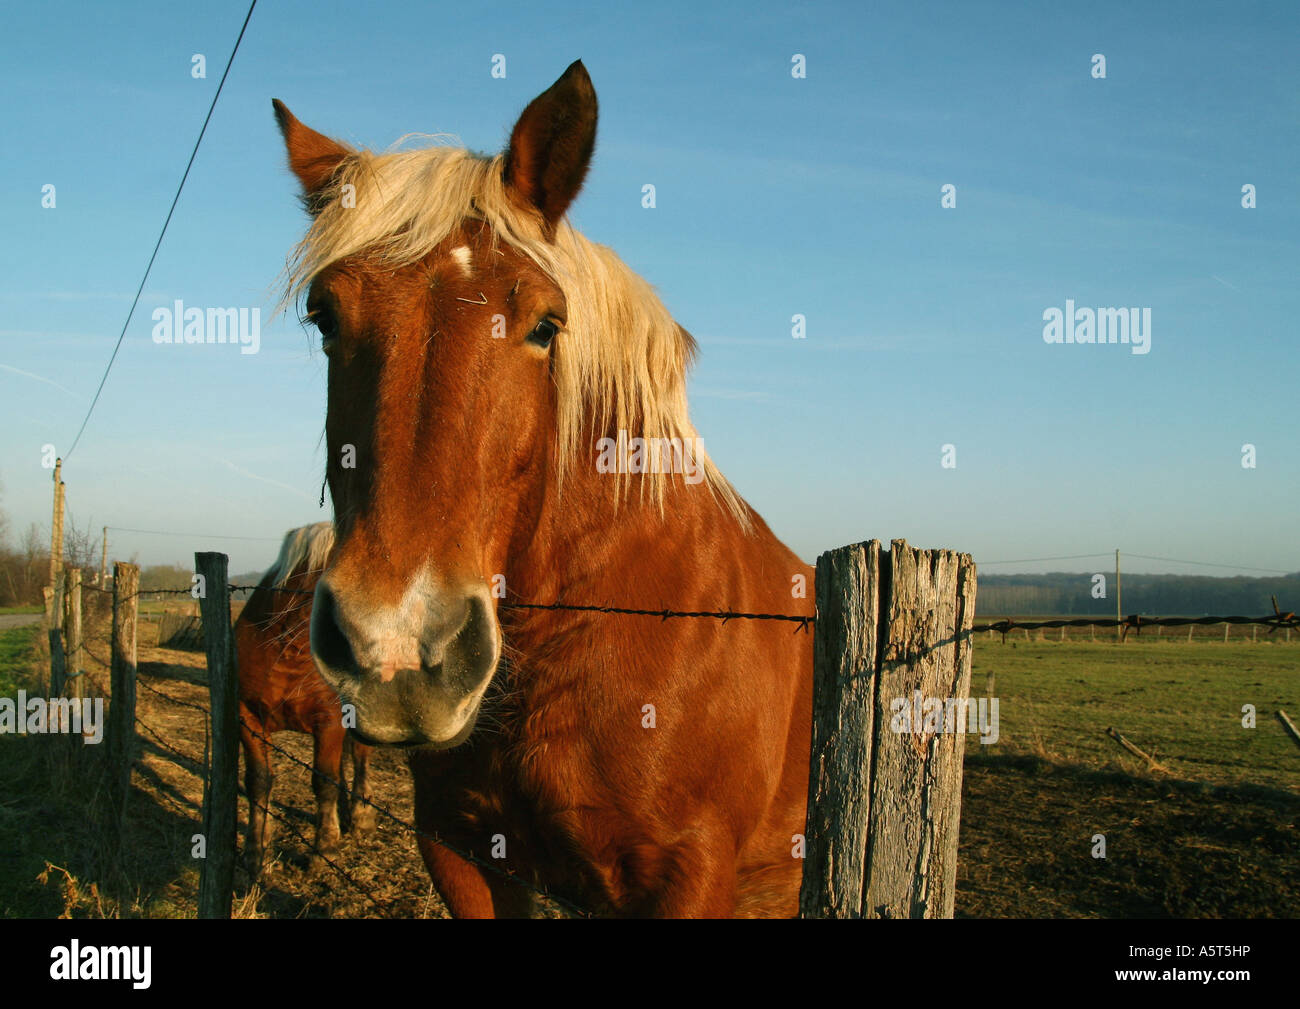 Palomino cavallo, testa sopra la recinzione, guardando la fotocamera Foto Stock